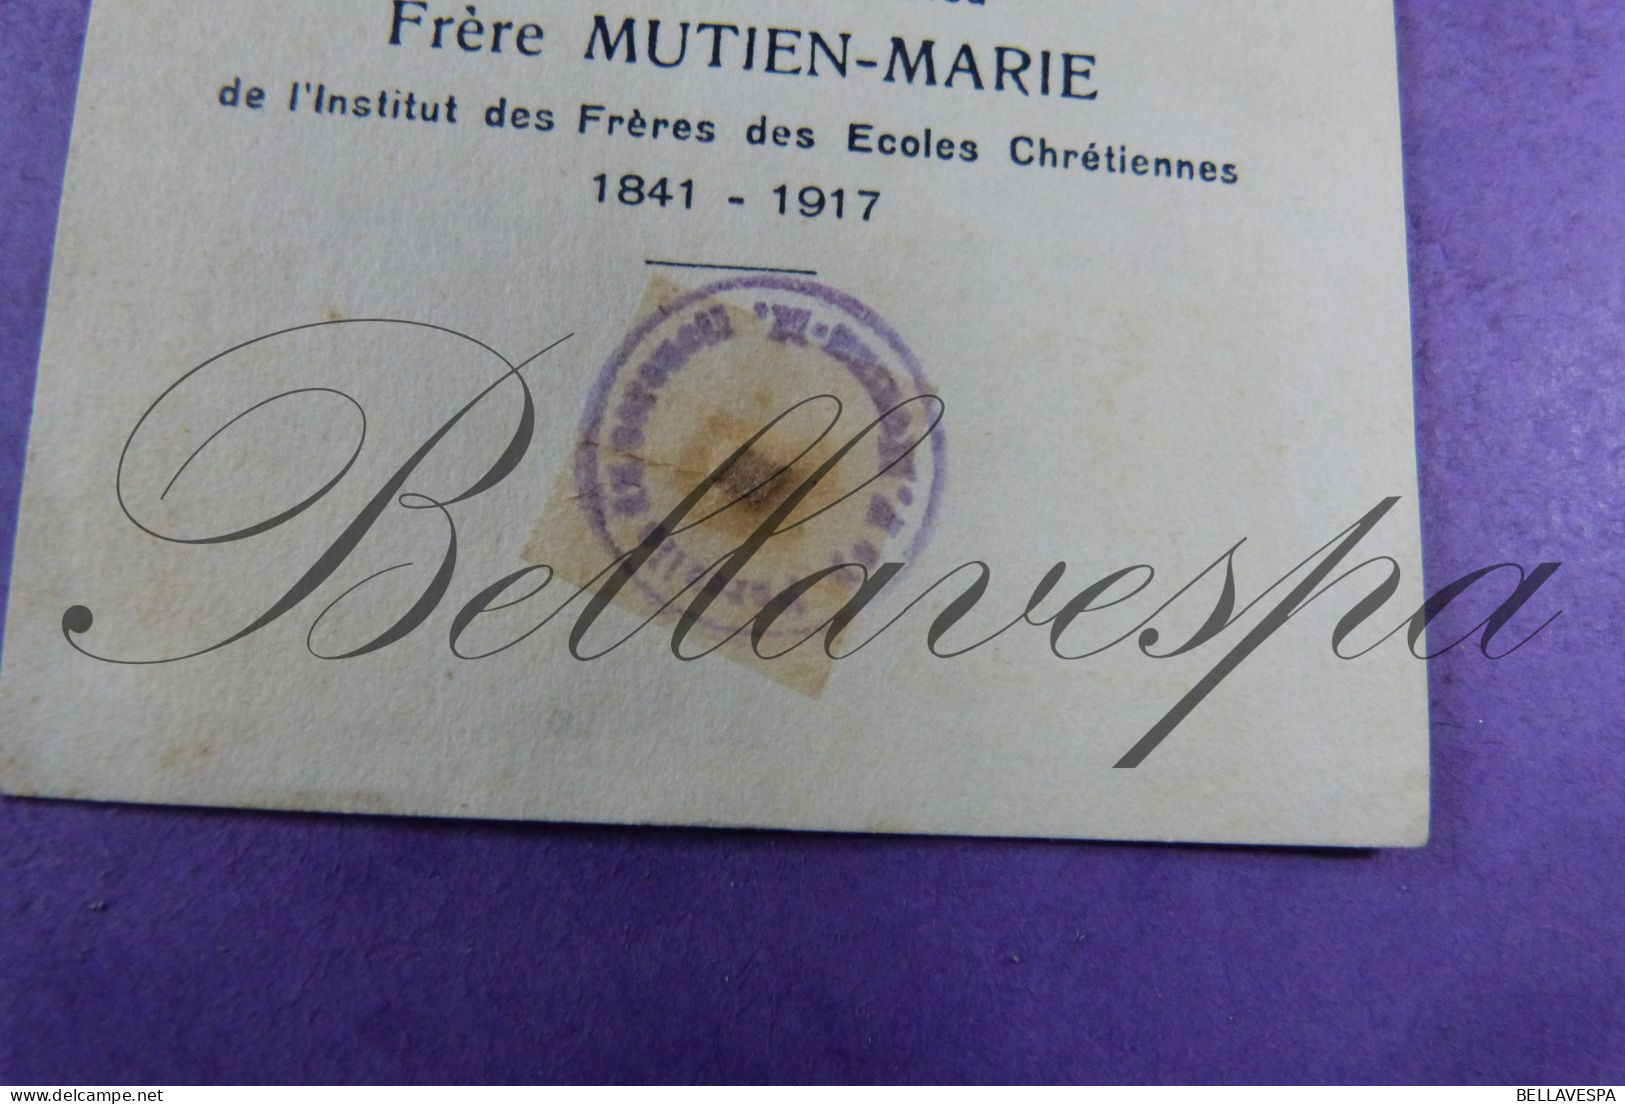 Frère MUTIEN-MARIE 1841-1917 Relique  Relique 1930 - Images Religieuses